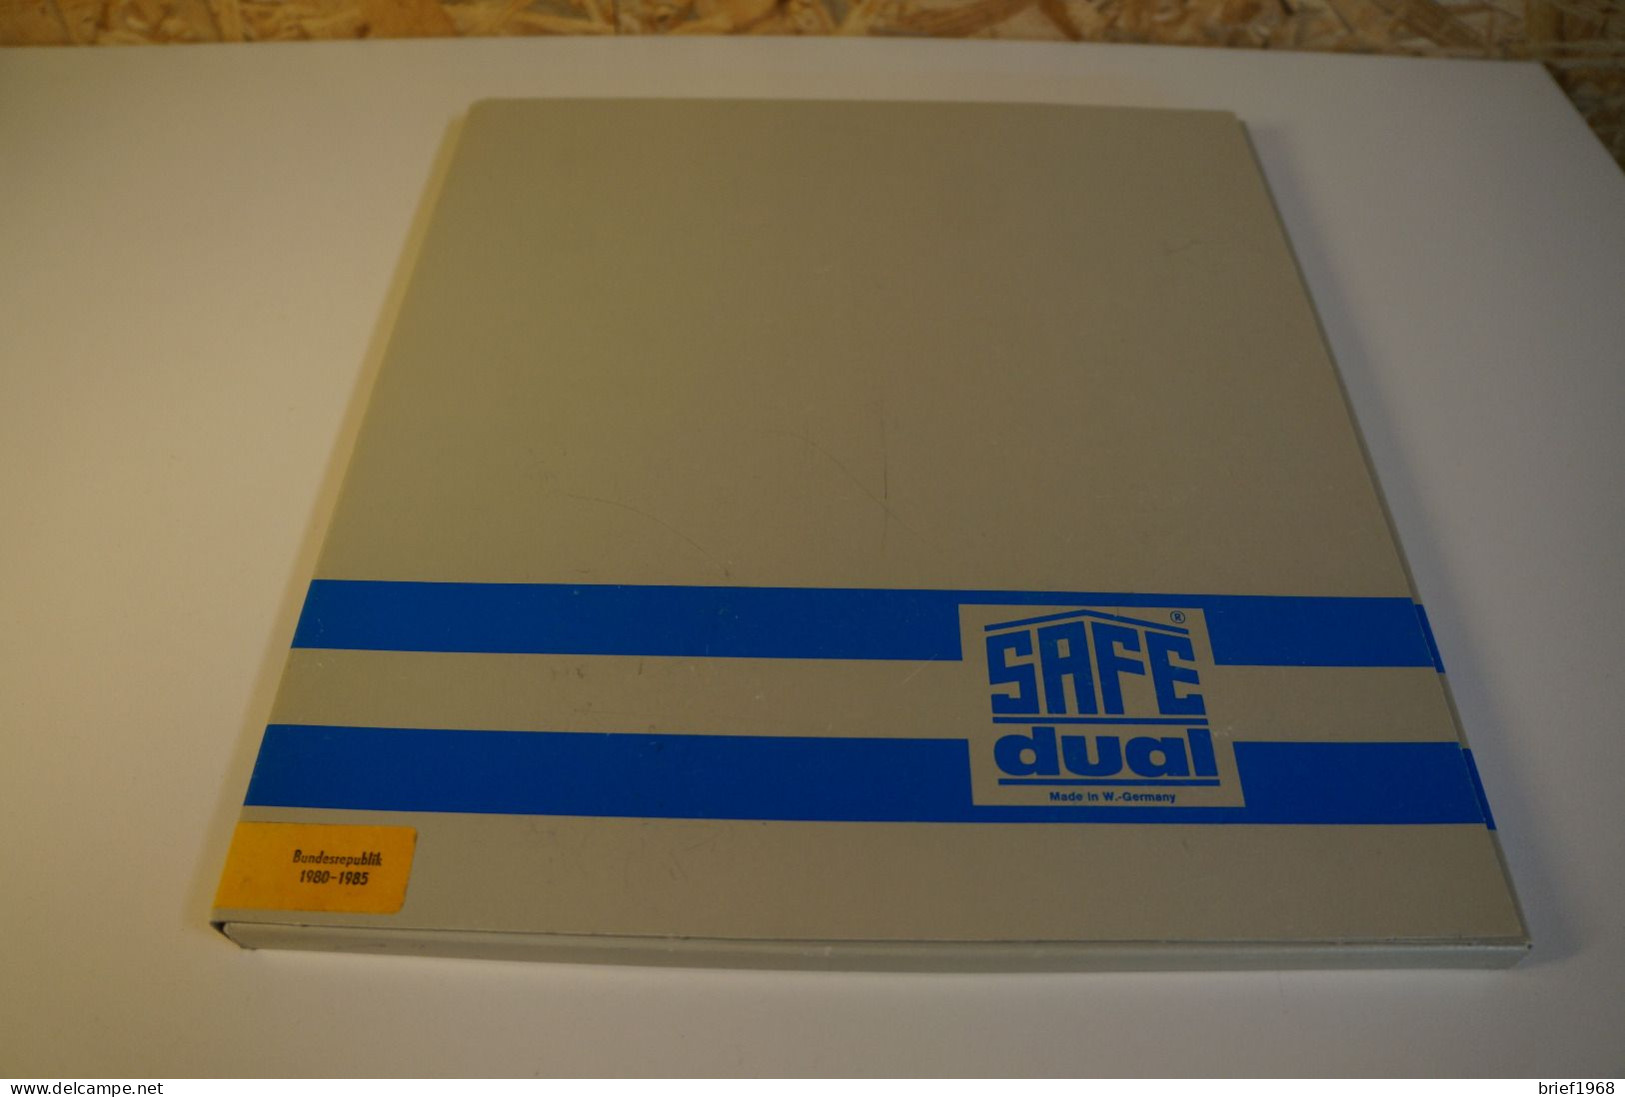 Bund Safe Dual 1980-1985 (27964) - Pré-Imprimés